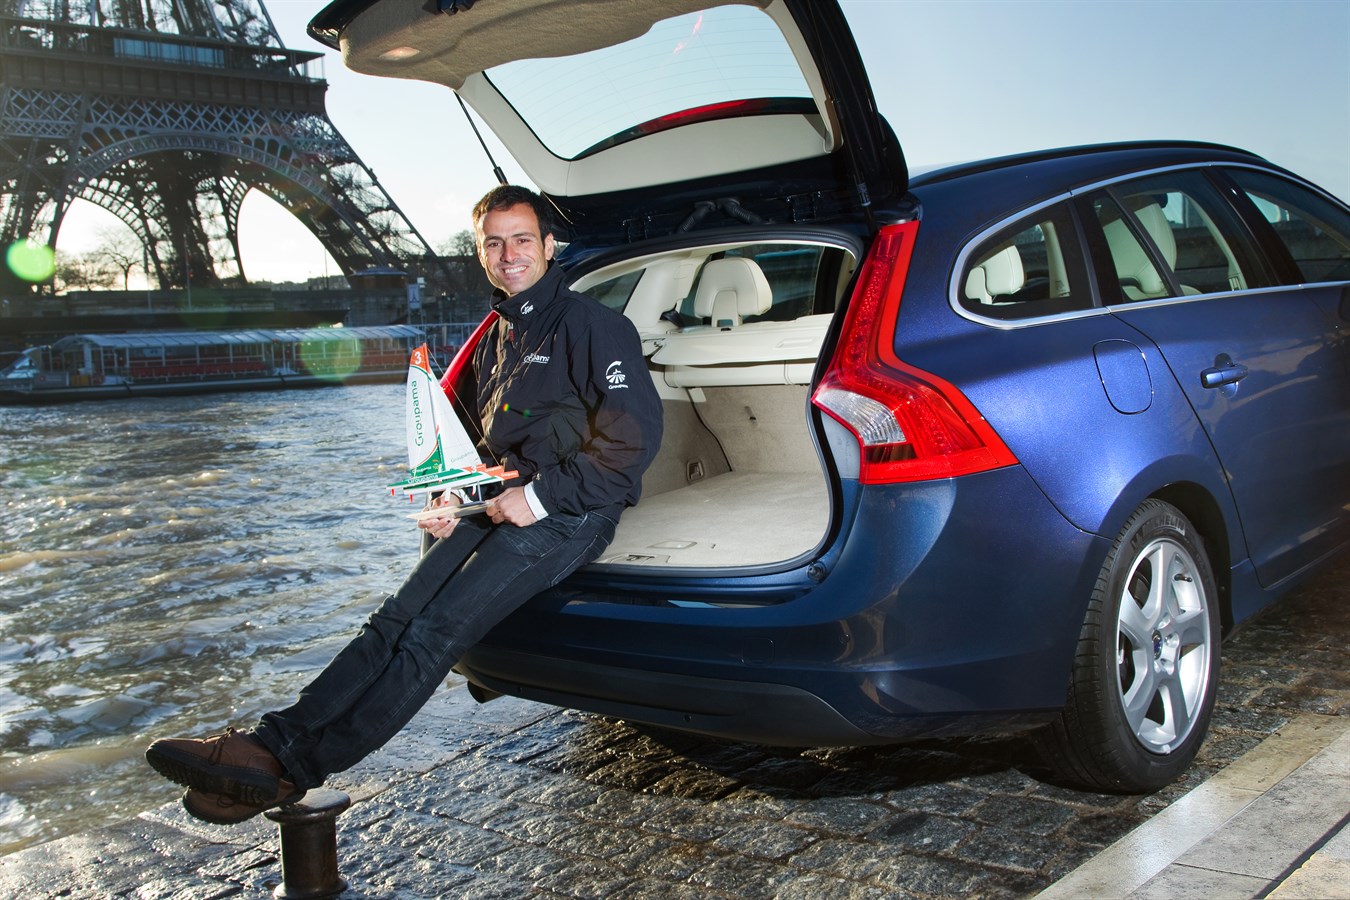 Le navigateur français, Franck Cammas, Ambassadeur du Volvo V60 Plug In Hybrid - Vainqueur sur Groupama 4 de la Volvo Ocean Race 2011-12 - Marin de l'année FFVoile 2012 & 2013.